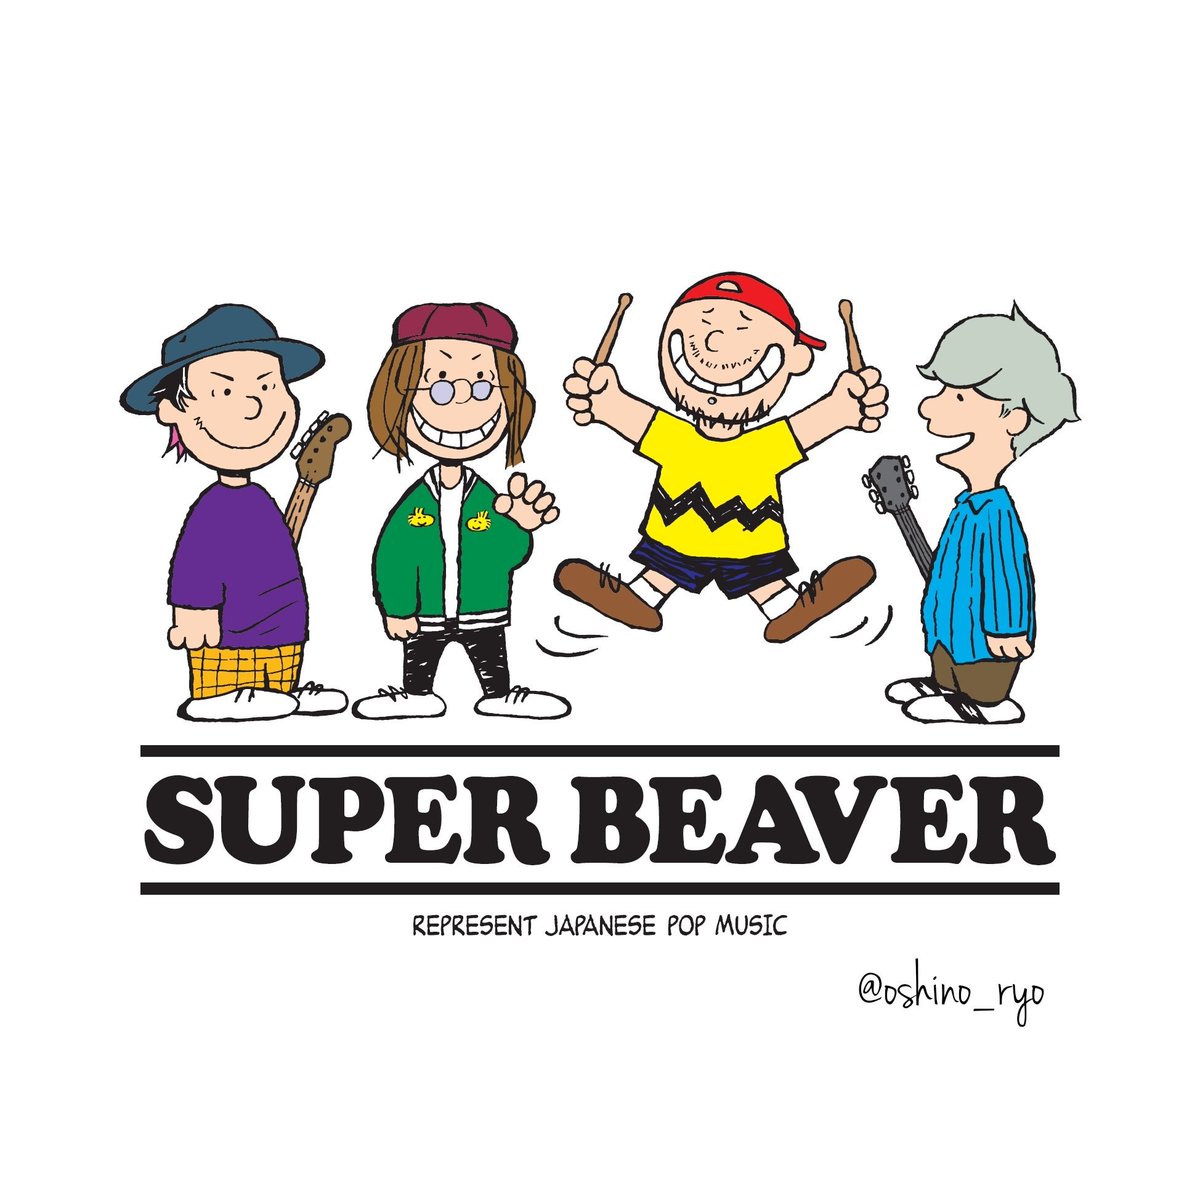 りょう Twitter वर Tシャツに使ったイラストをリクエストいただいたので Super Beaver スヌーピー風です イラスト 似顔絵 Superbeaver スヌーピー ピーナッツ